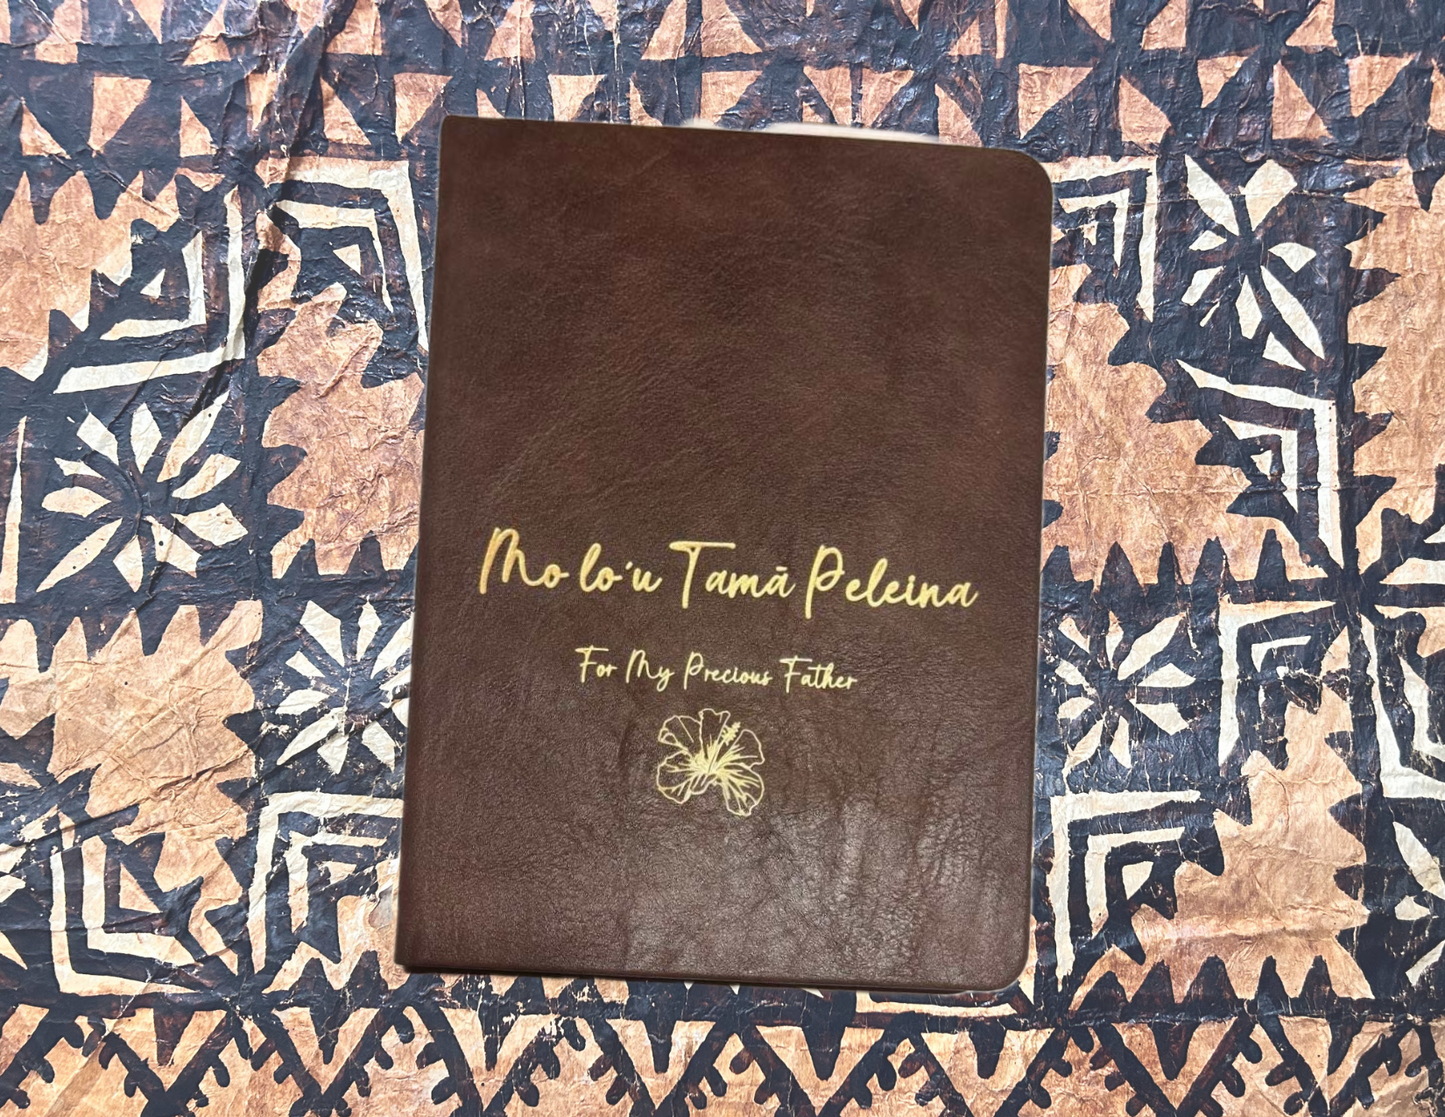 Mo Lo’u Tamā Peleina - For My Precious Father